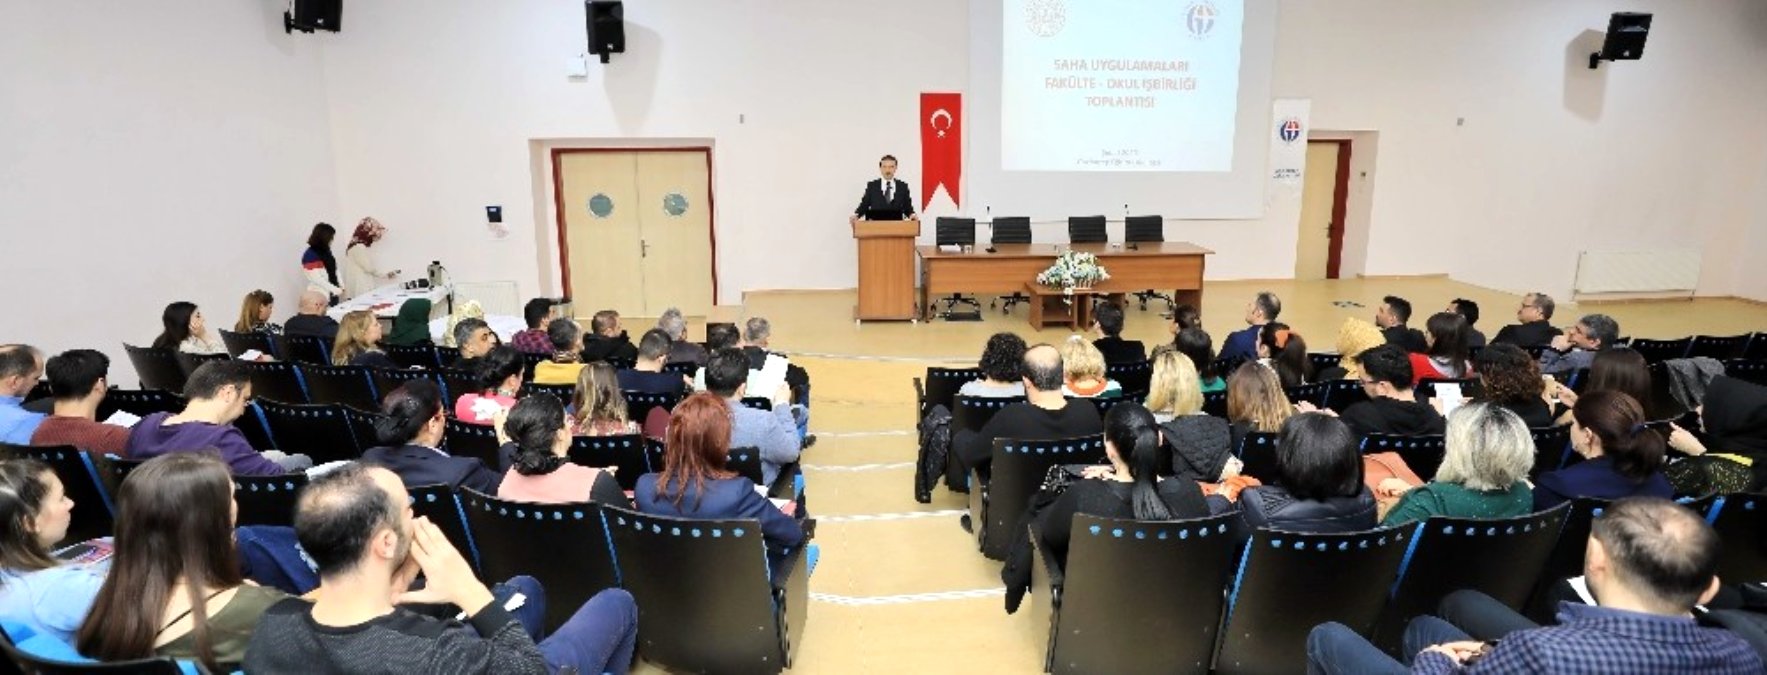 Gaziantep Fakülte-Okul İşbirliği toplantısı